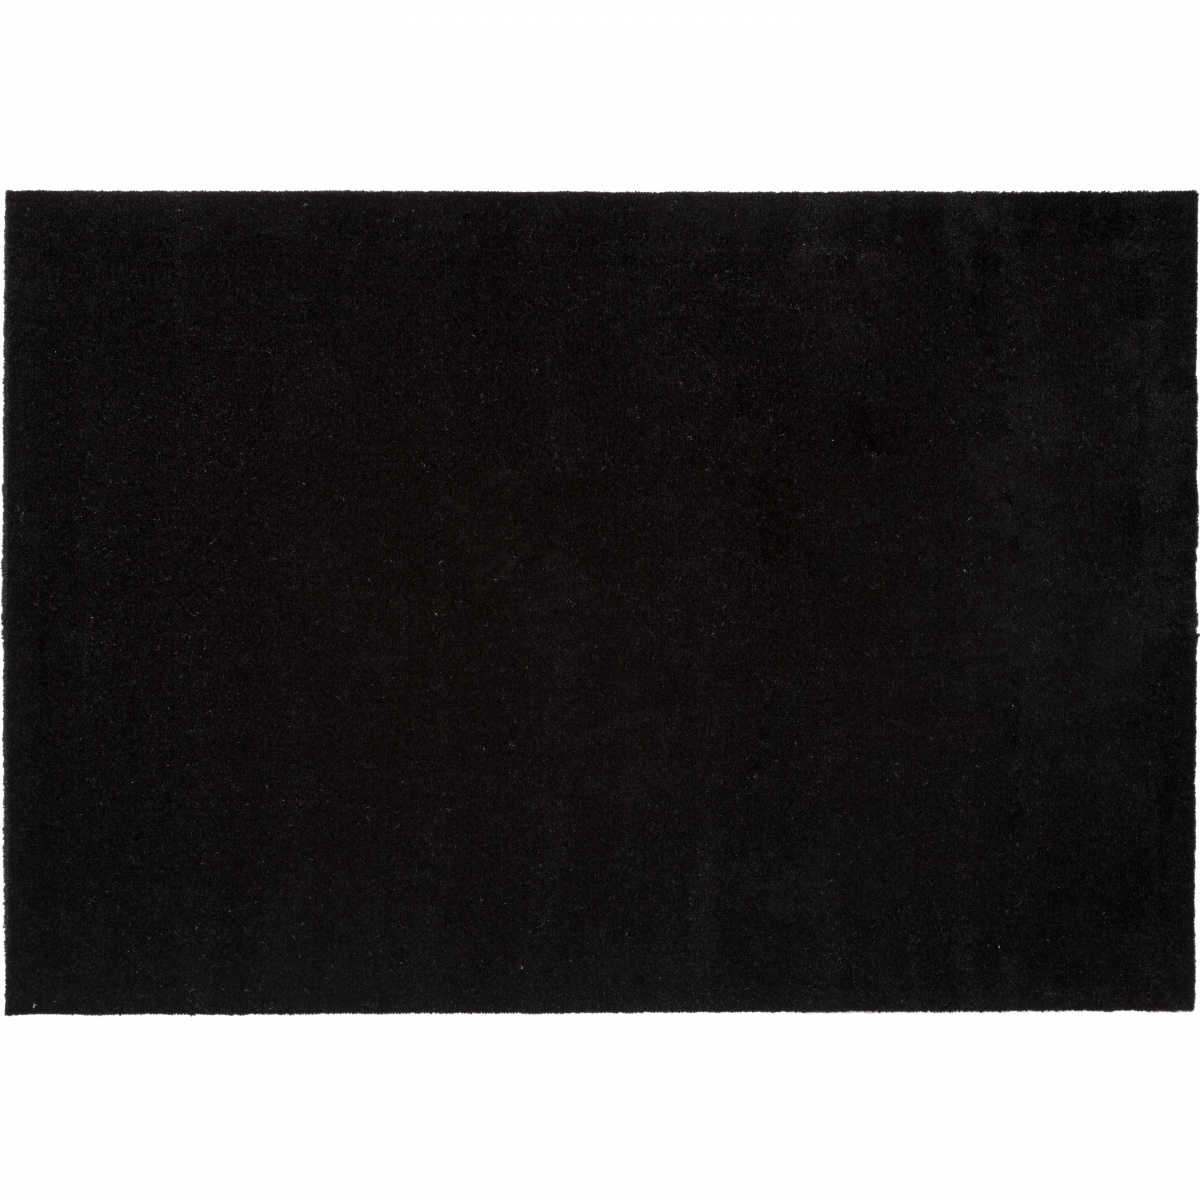 Tica Fußmatte, schwarz - 90x130